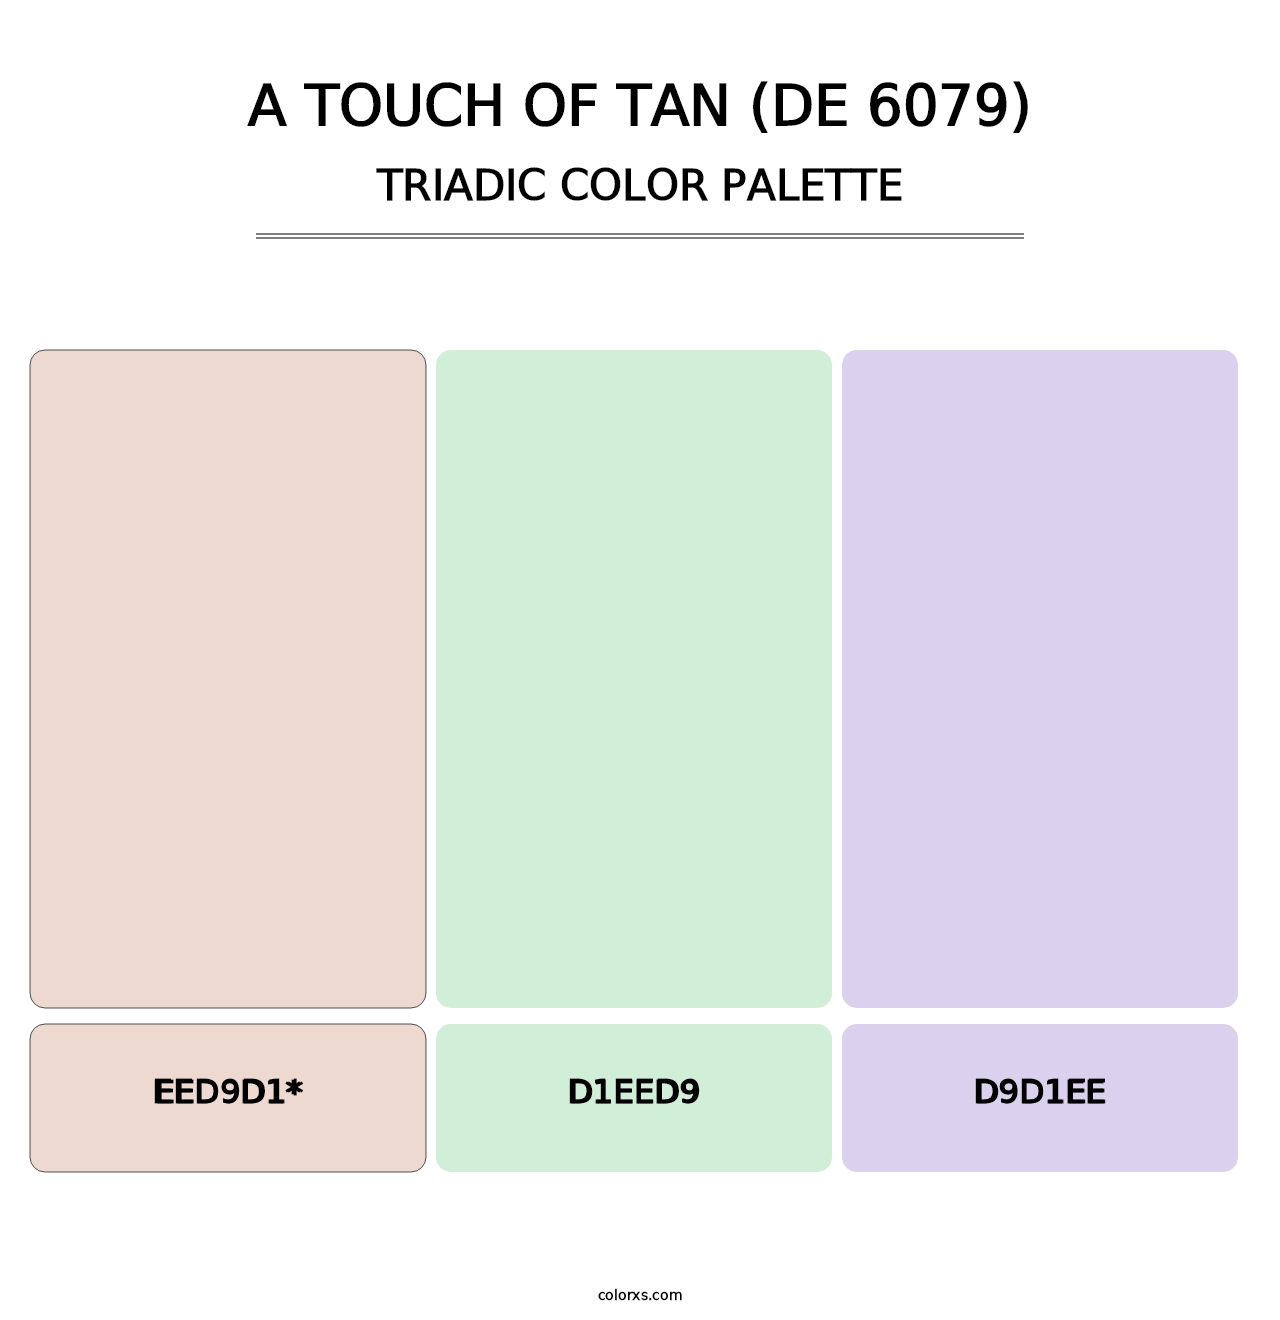 A Touch of Tan (DE 6079) - Triadic Color Palette